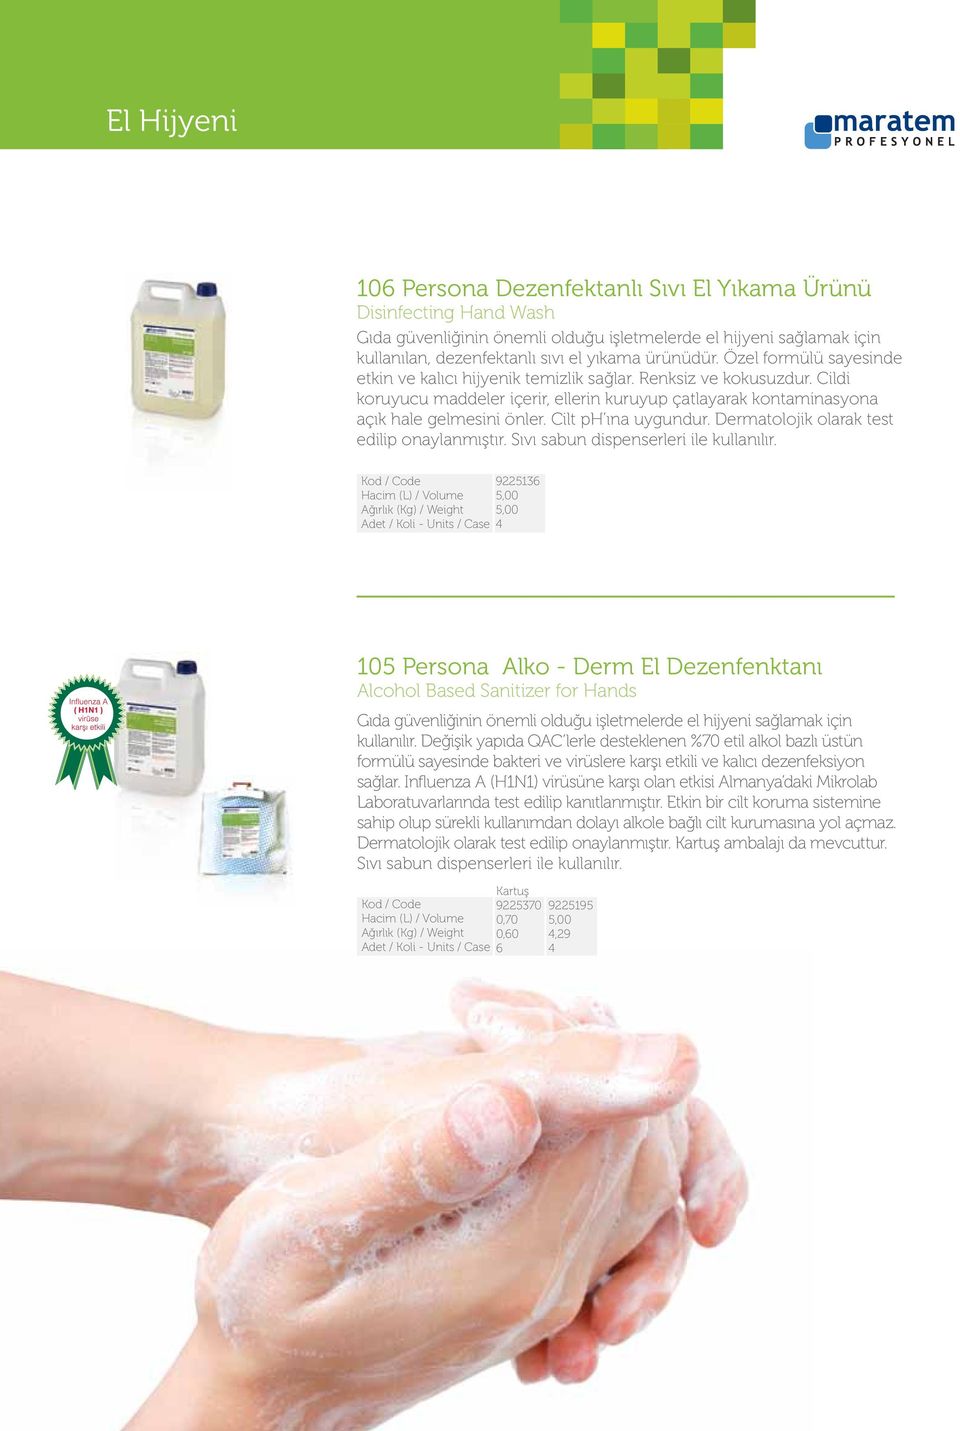 Cilt ph ına uygundur. Dermatolojik olarak test edilip onaylanmıştır. Sıvı sabun dispenserleri ile kullanılır.